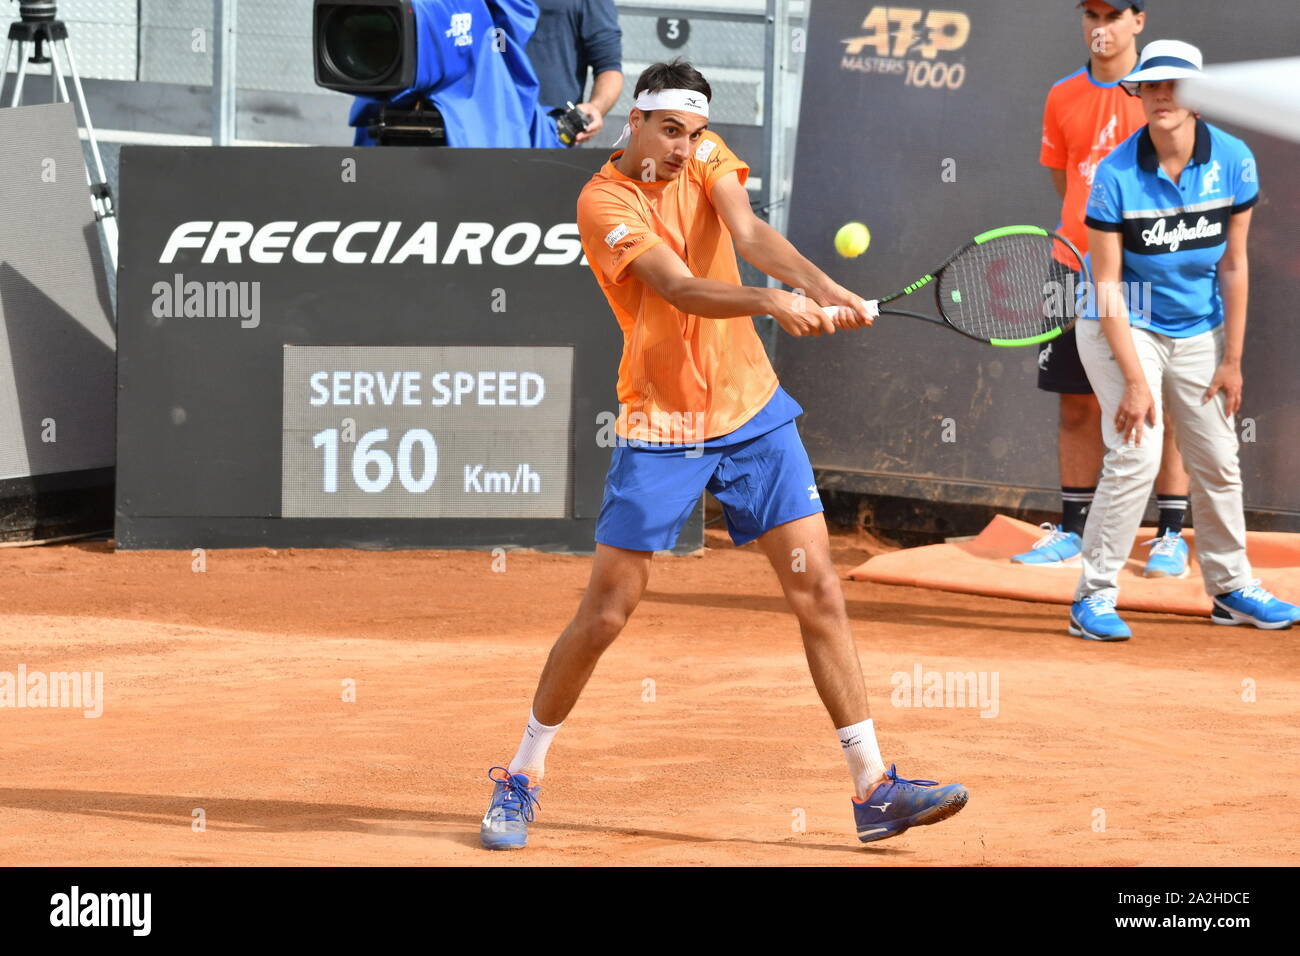 Lorenzo sonego Roms lors Internazionali BNL 2019 , Rome, Italie, 13 mai 2019, les Internationaux de Tennis Tennis Banque D'Images